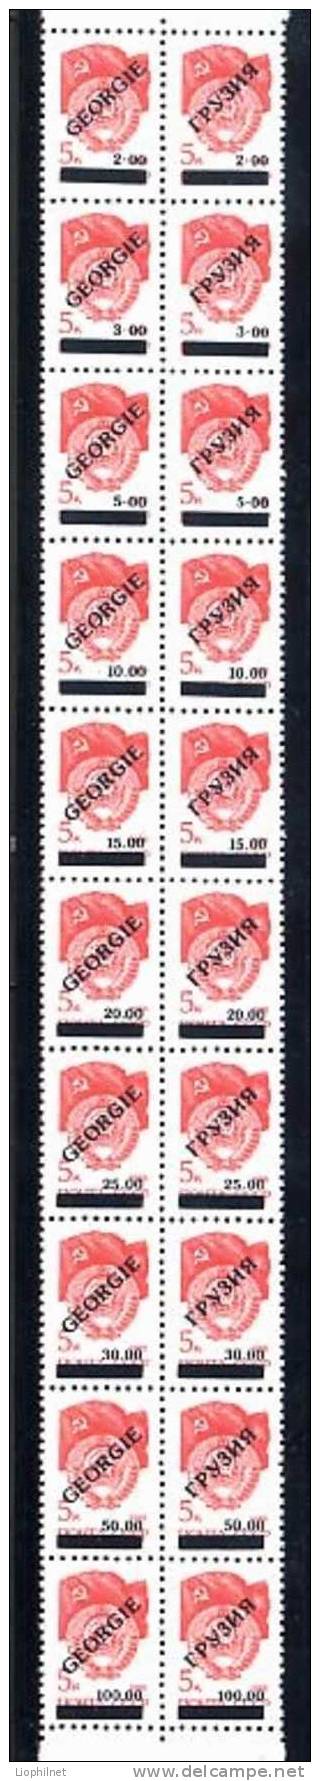 1992, 20 Valeurs SURCHARGES Sur URSS Yvert 5581a. R429b - Postzegels